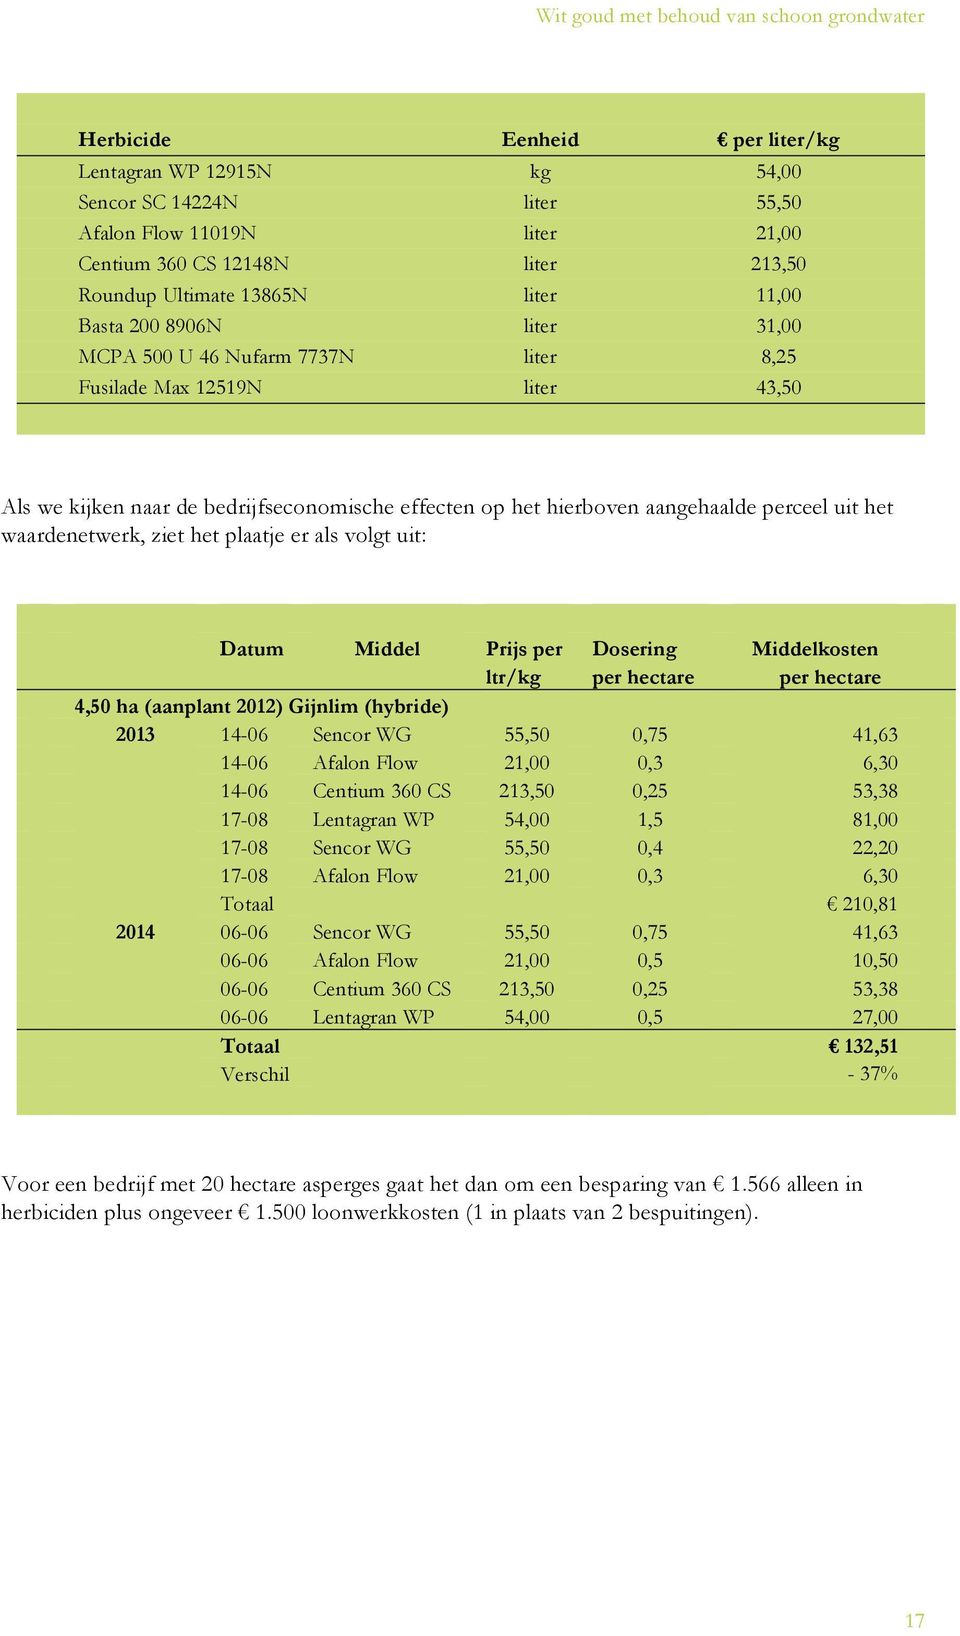 waardenetwerk, ziet het plaatje er als volgt uit: Datum Middel Prijs per ltr/kg Dosering per hectare Middelkosten per hectare 4,50 ha (aanplant 2012) Gijnlim (hybride) 2013 14-06 Sencor WG 55,50 0,75